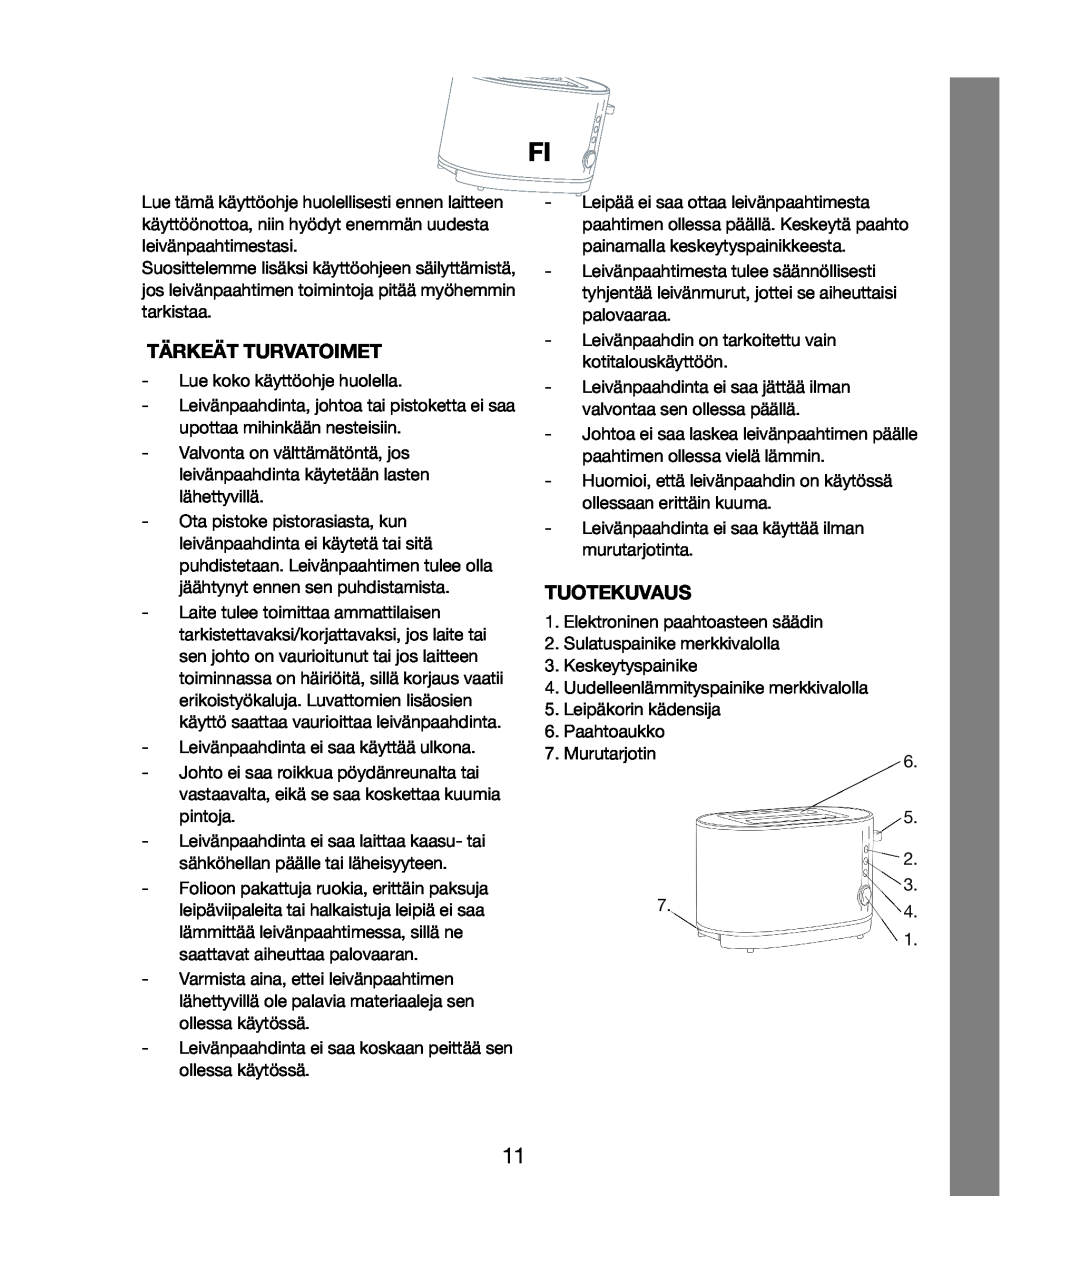 Melissa 021 & 028 manual Tärkeät Turvatoimet, Tuotekuvaus 